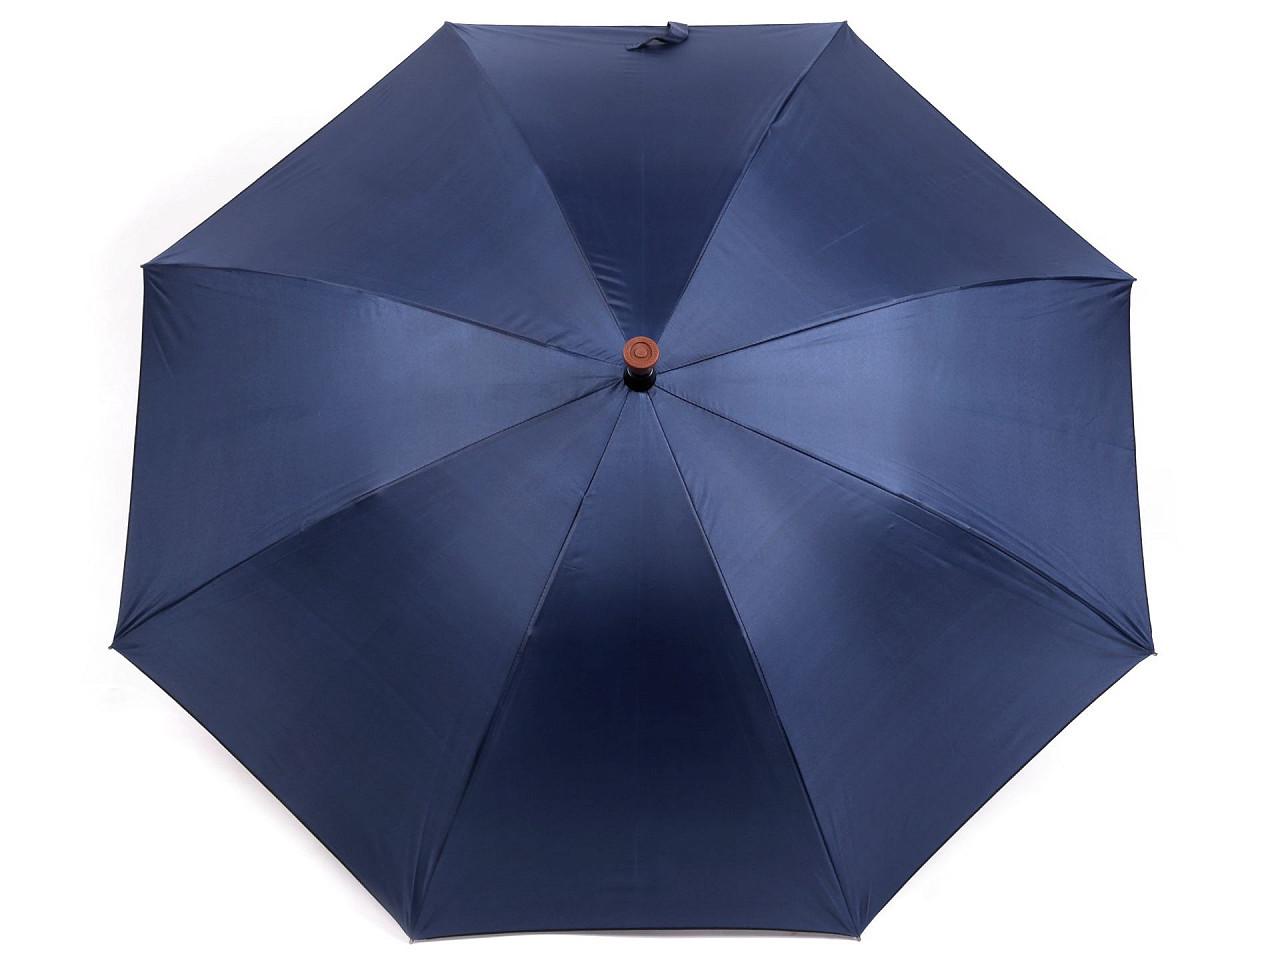 Deštník s vycházkovou holí, barva 1 modrá tmavá